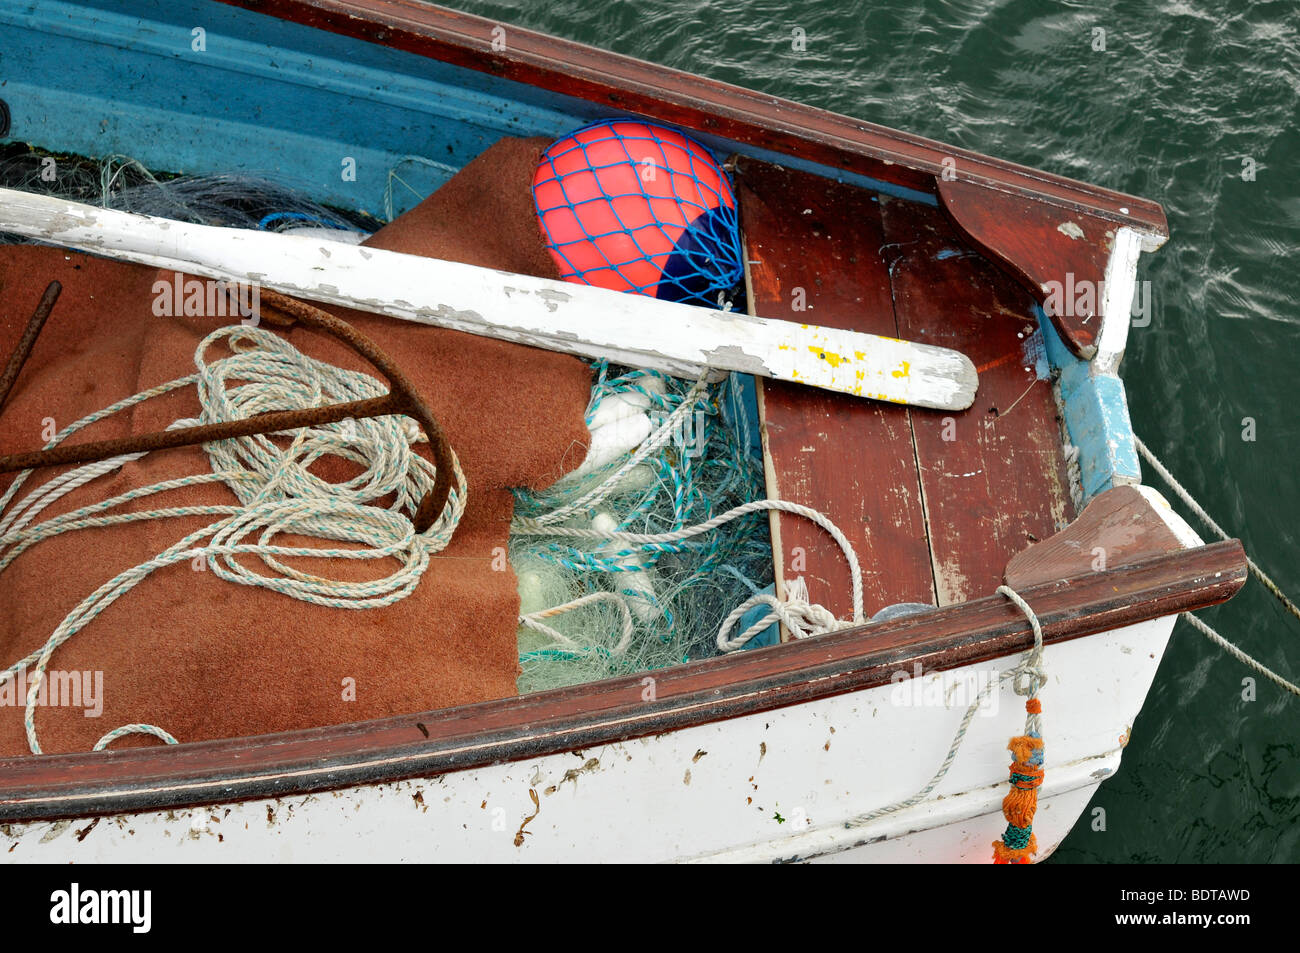 Barca da pesca dettaglio northumberland oar net anchor legno vecchio meteo battuto Foto Stock